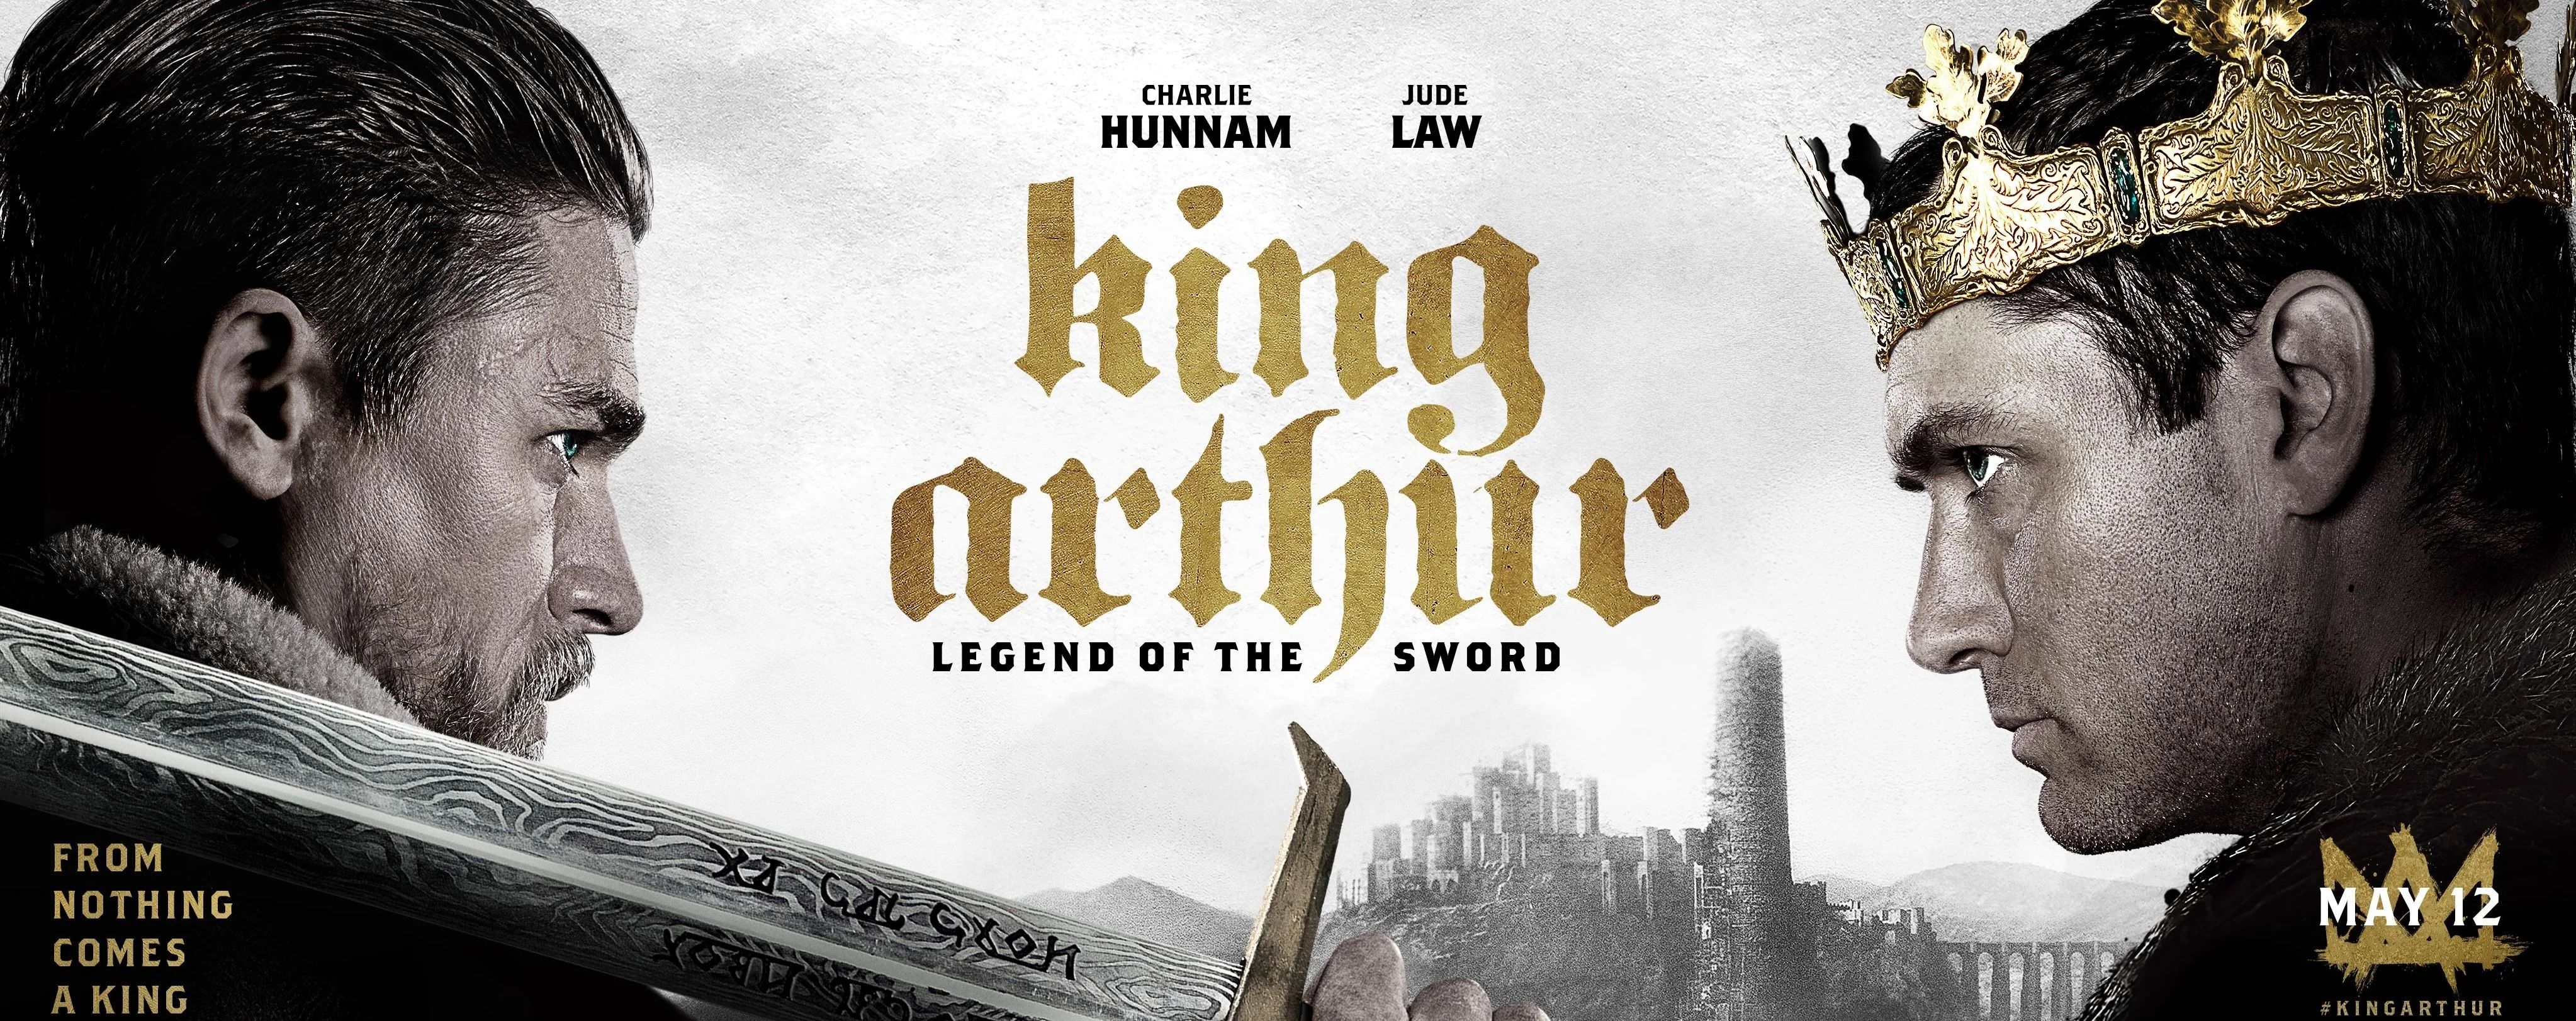 Обзор фильма «Меч короля Артура». Большой кукиш - изображение обложка